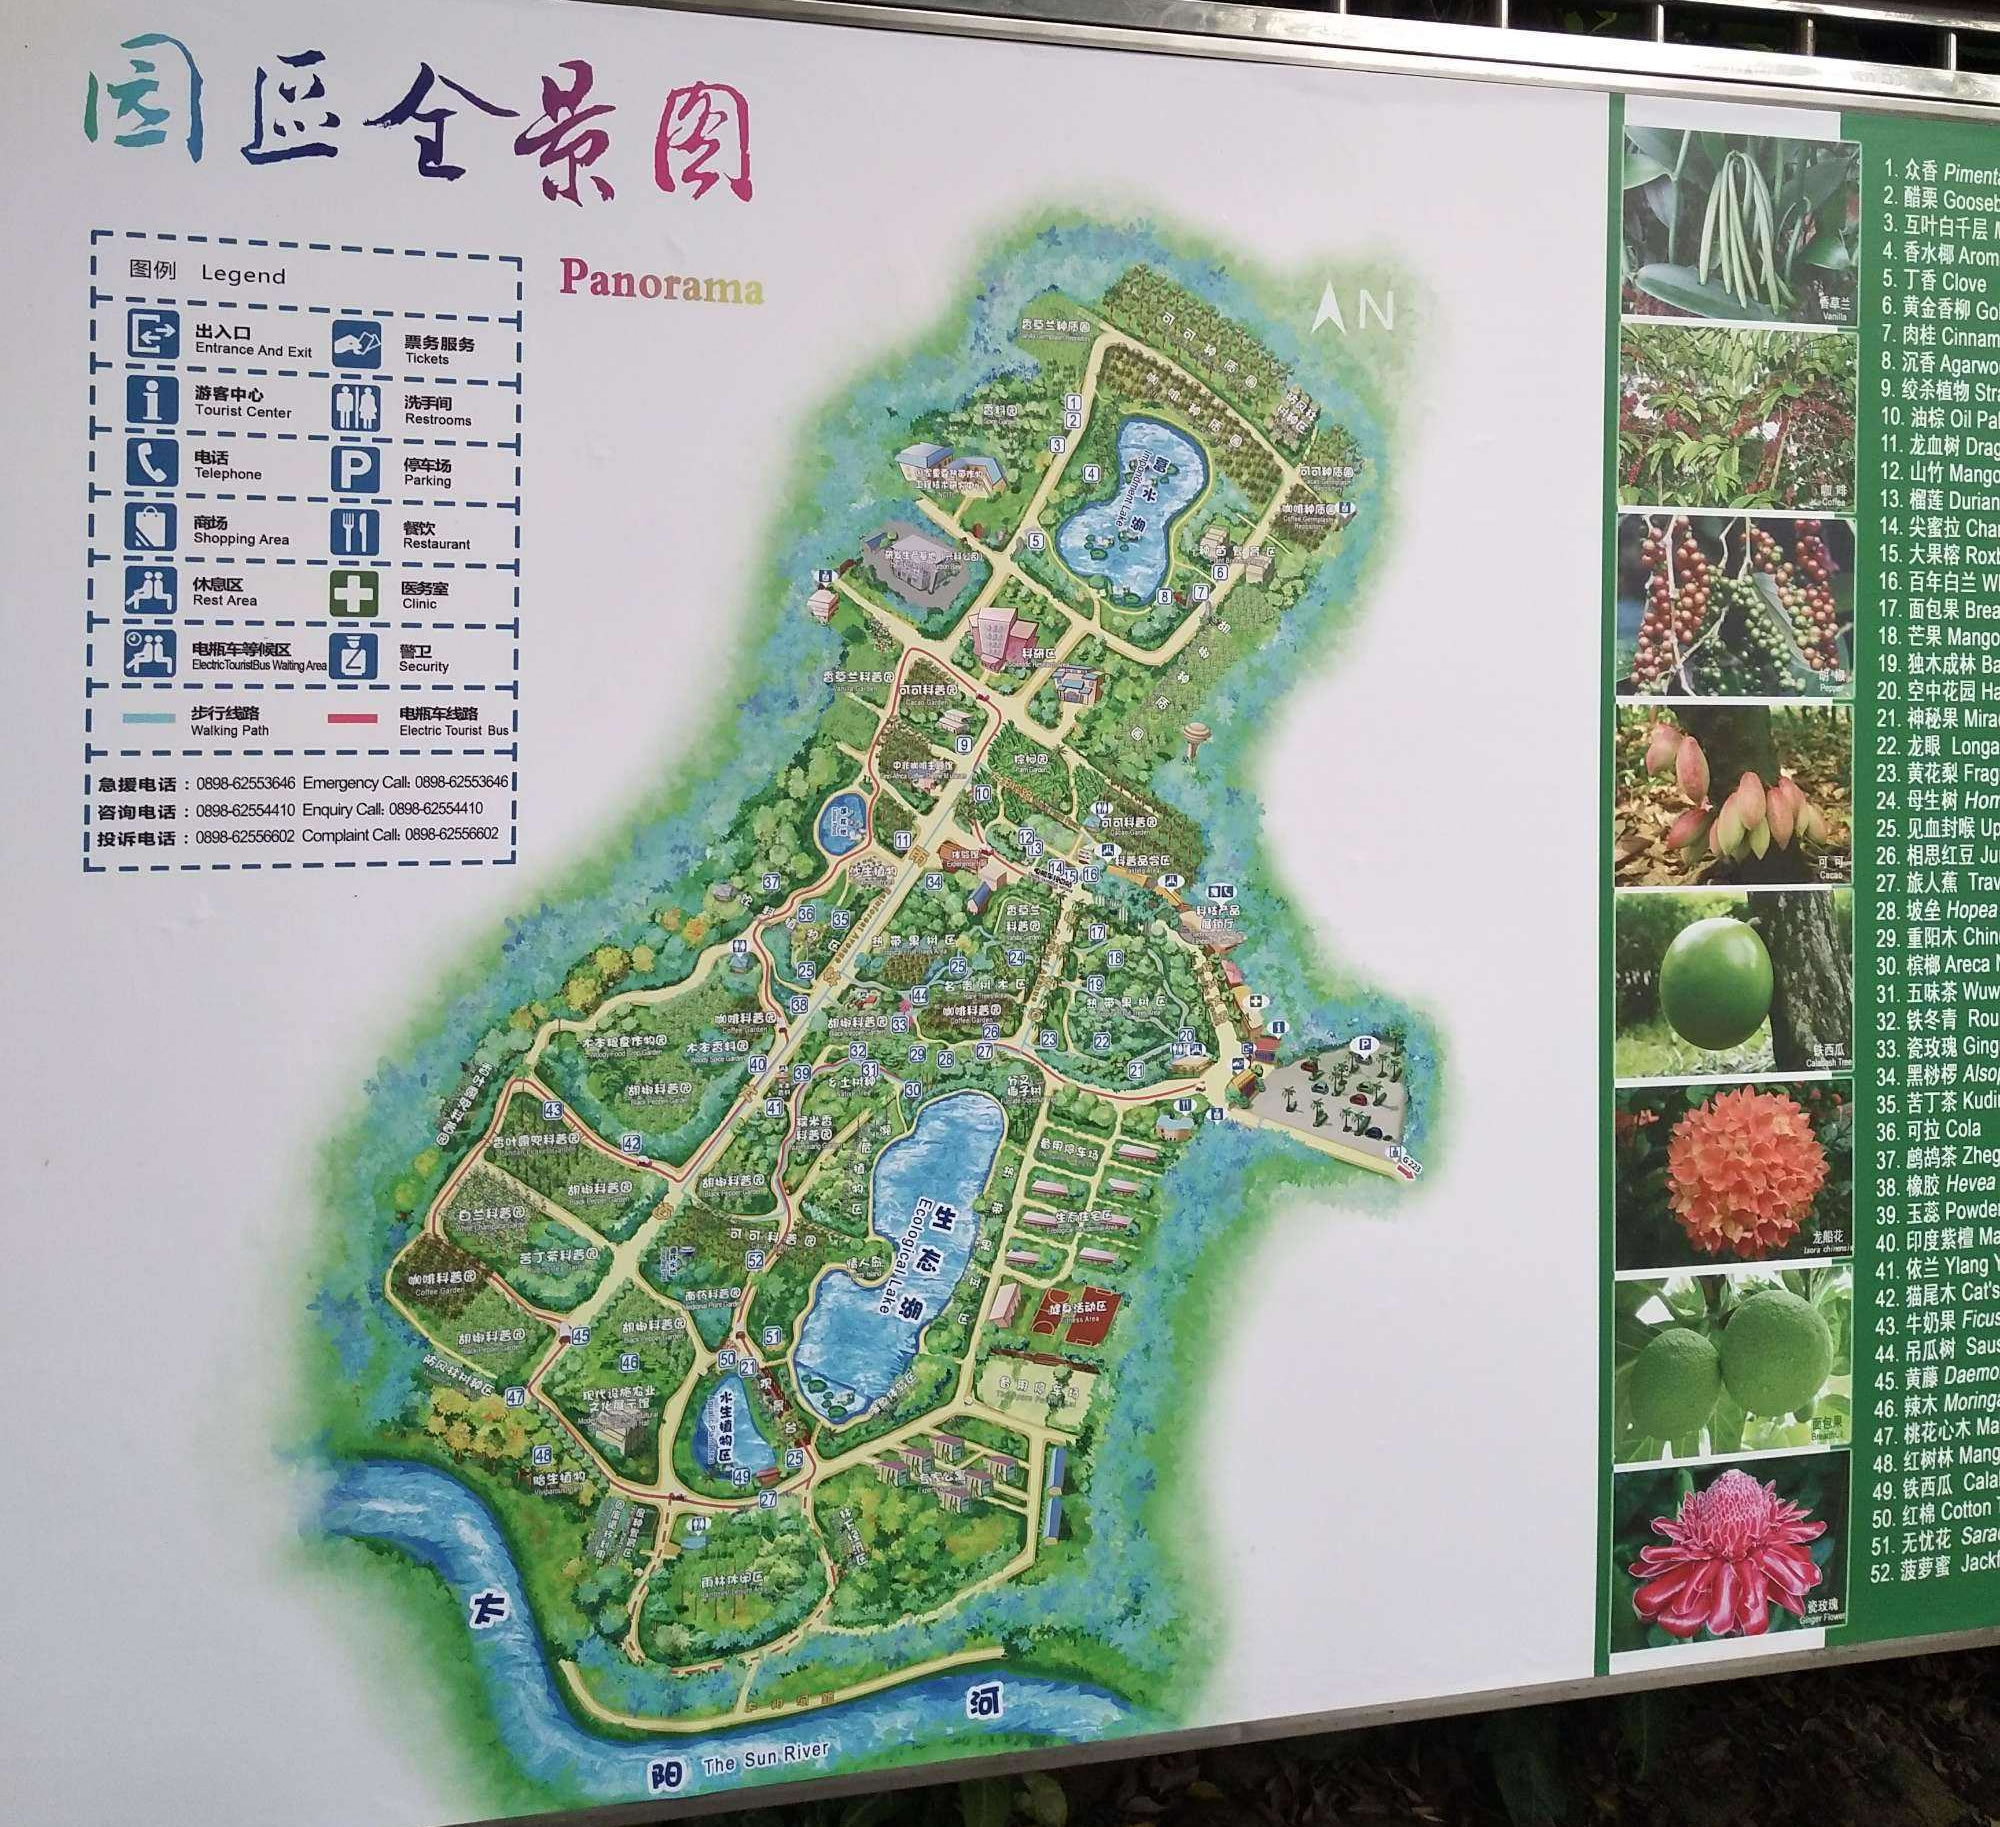 10月份与朋友游玩晨山植物公园 上海也有别样玩法 - 上海游记攻略【携程攻略】